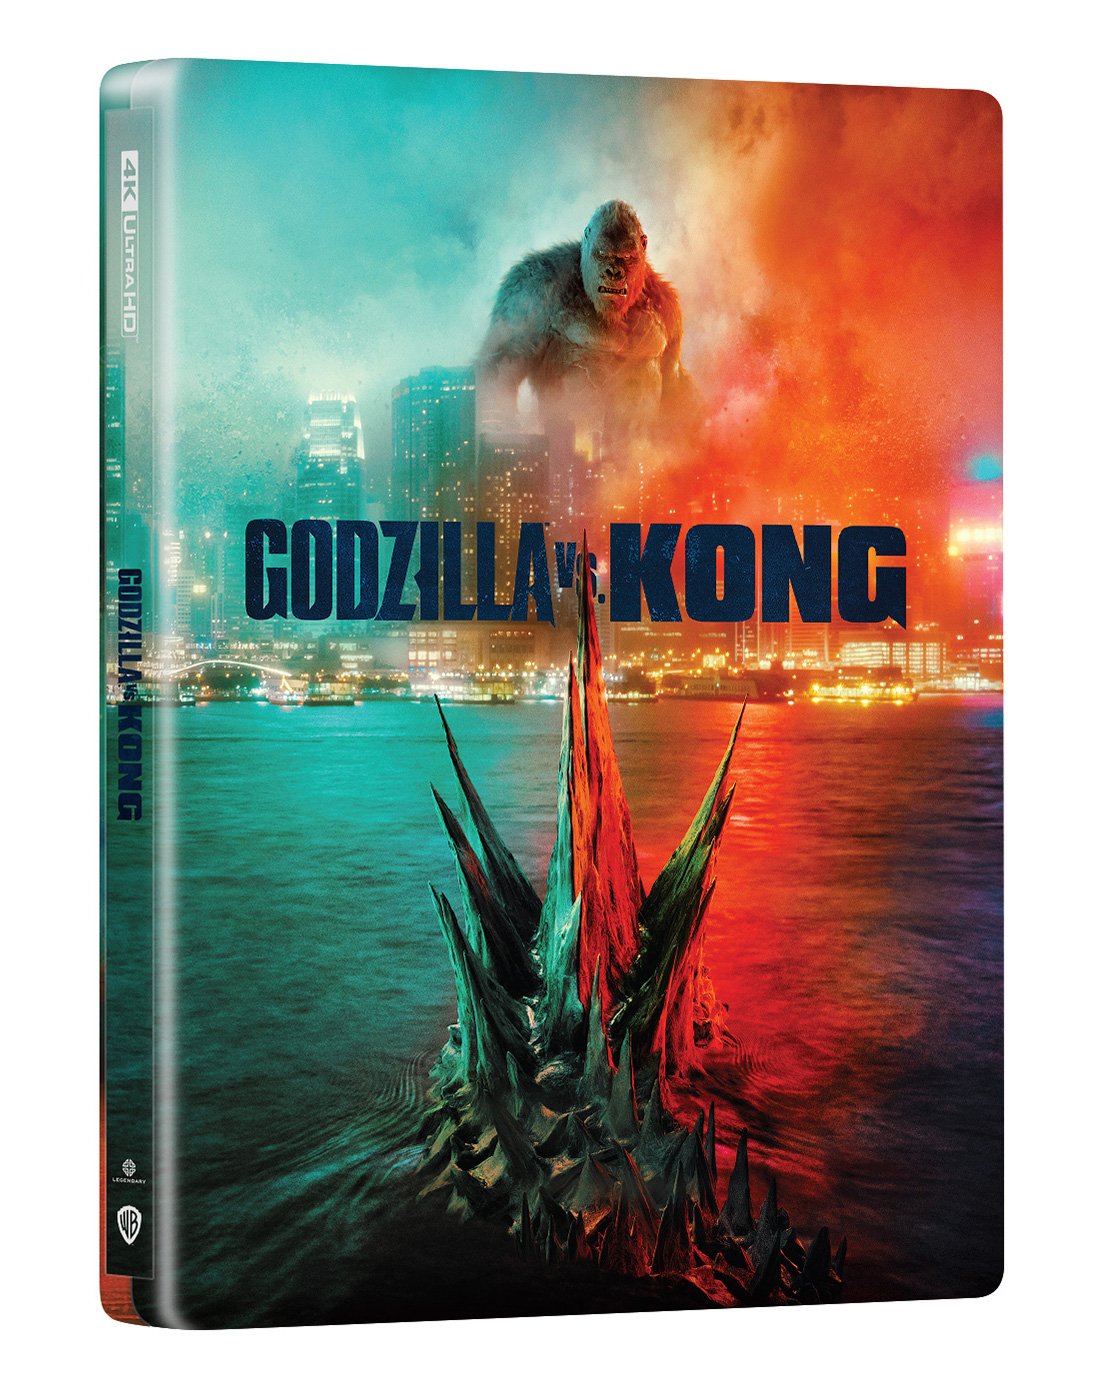 Godzilla vs. Kong ゴジラvsコング Manta Lab スチールブック Collectong steelbook